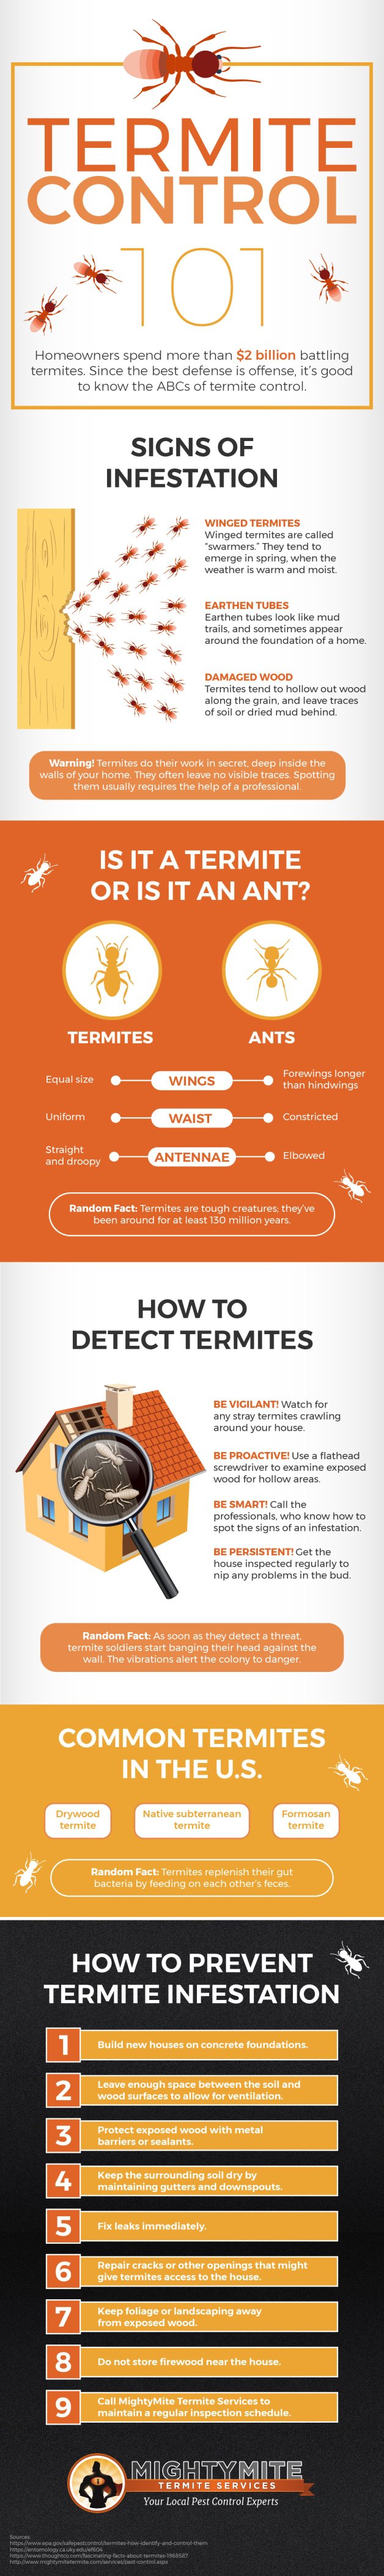 Termite control 101